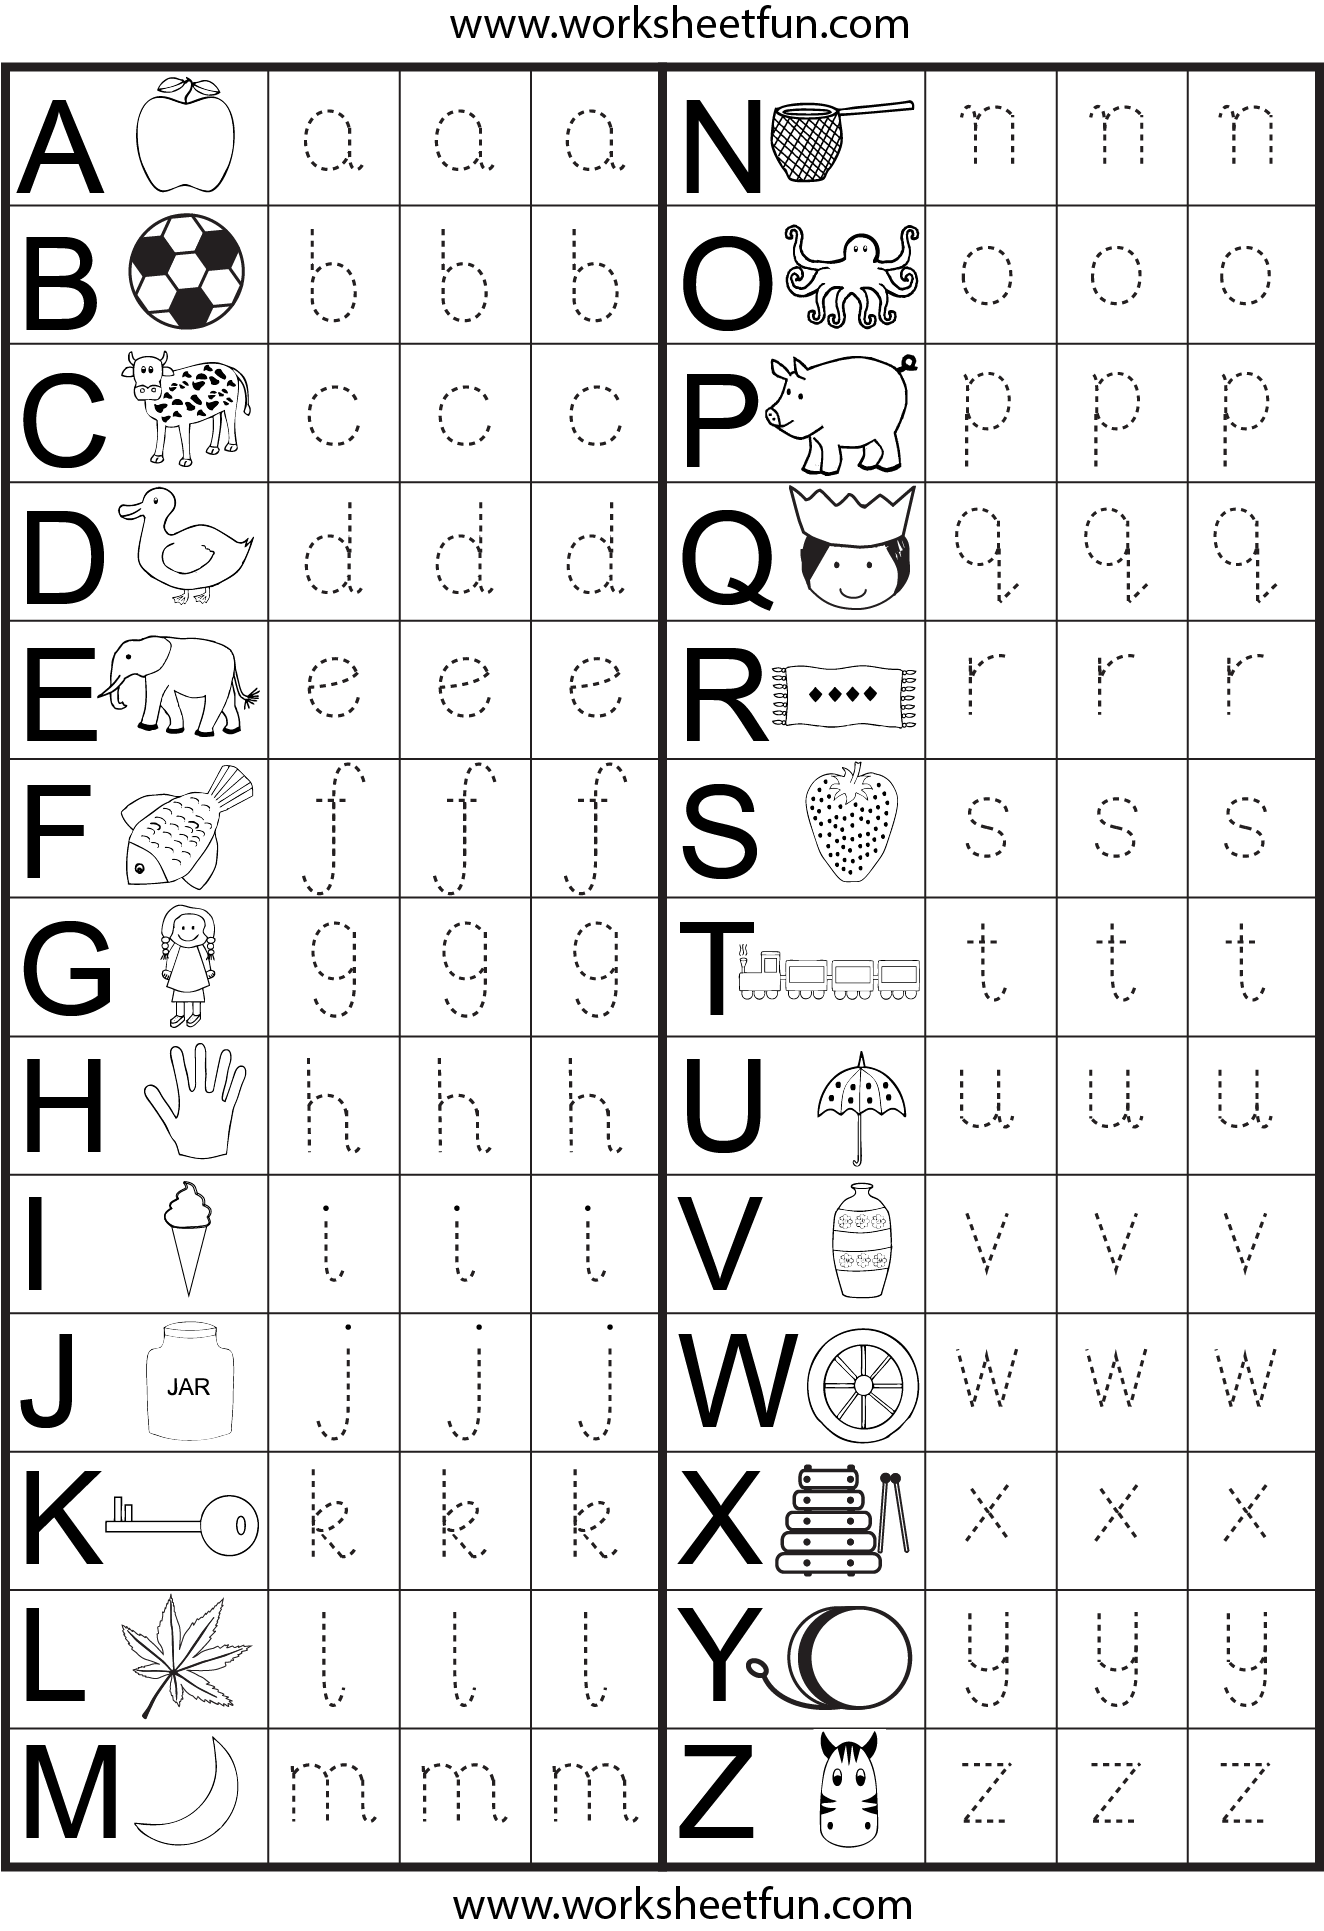 free printable kindergarten worksheets